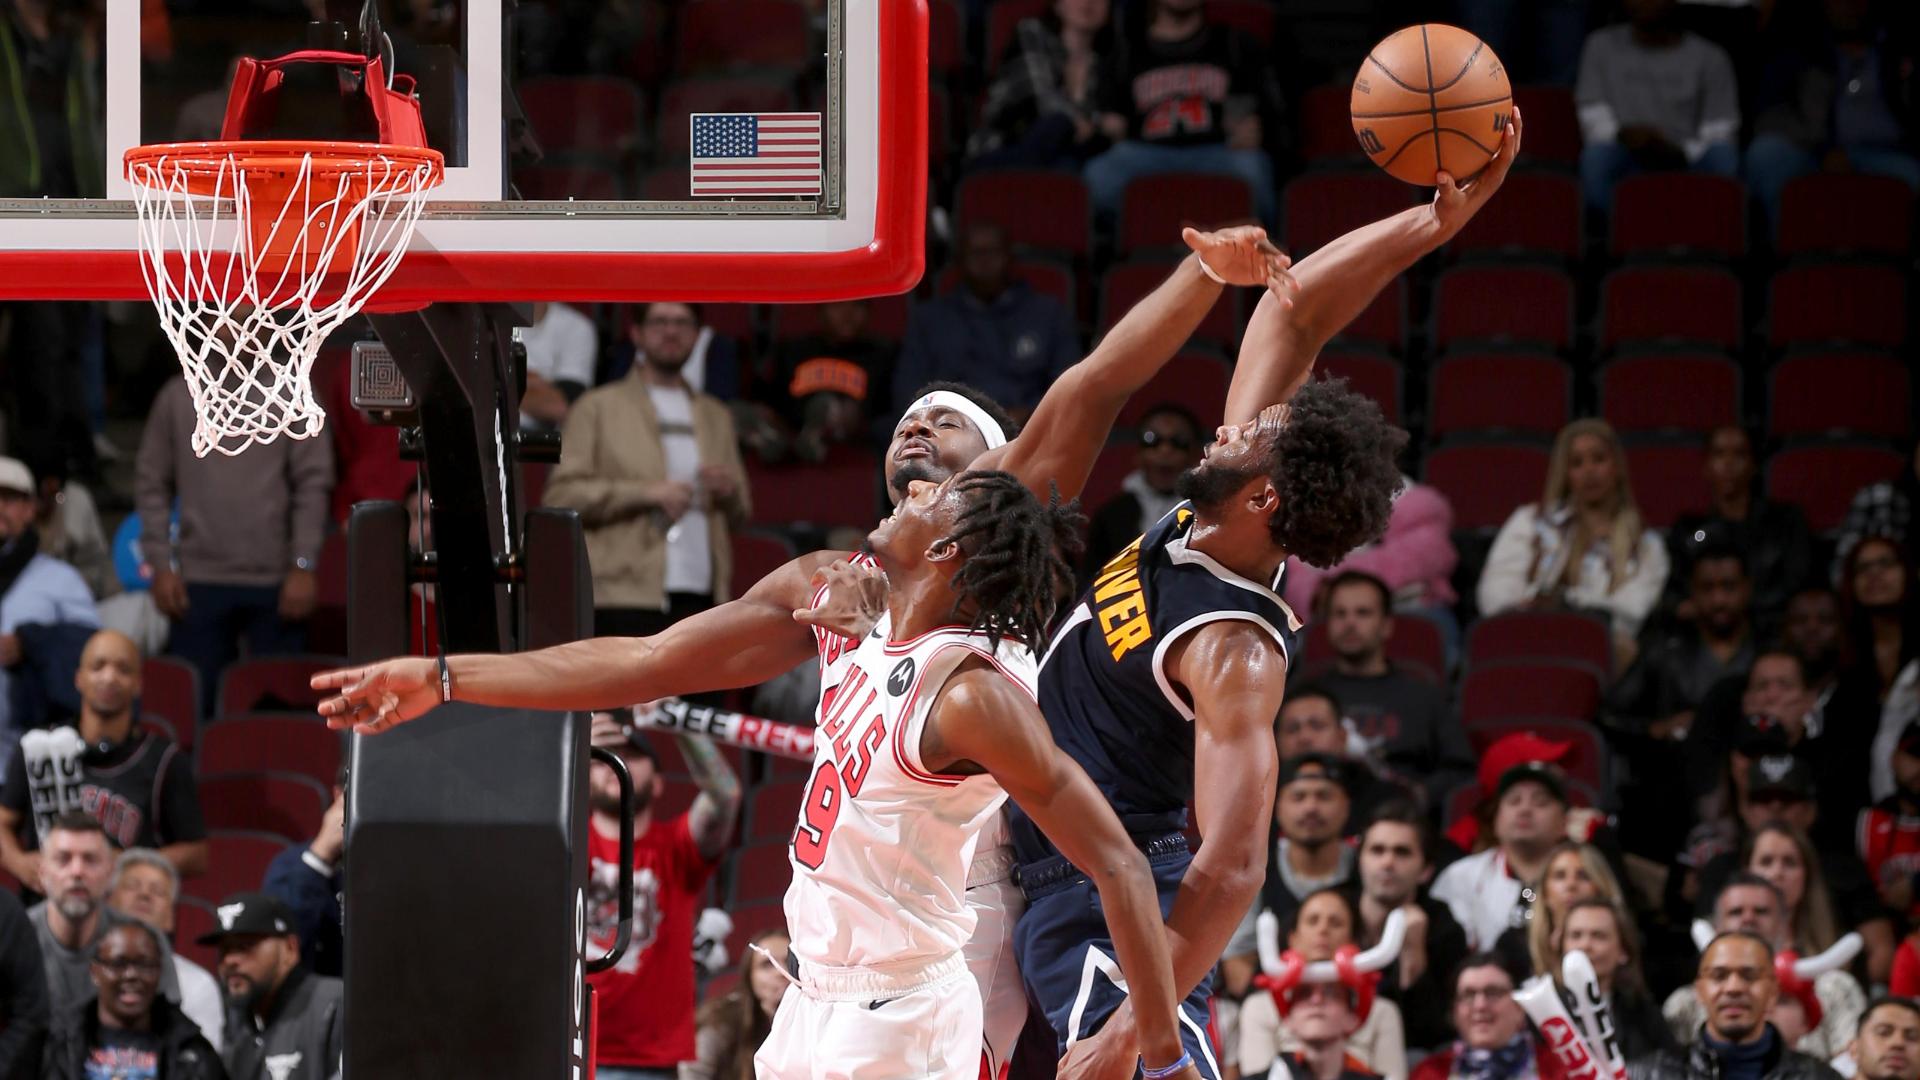 Ayo Dosunmu - Chicago Bulls Shooting Guard - ESPN